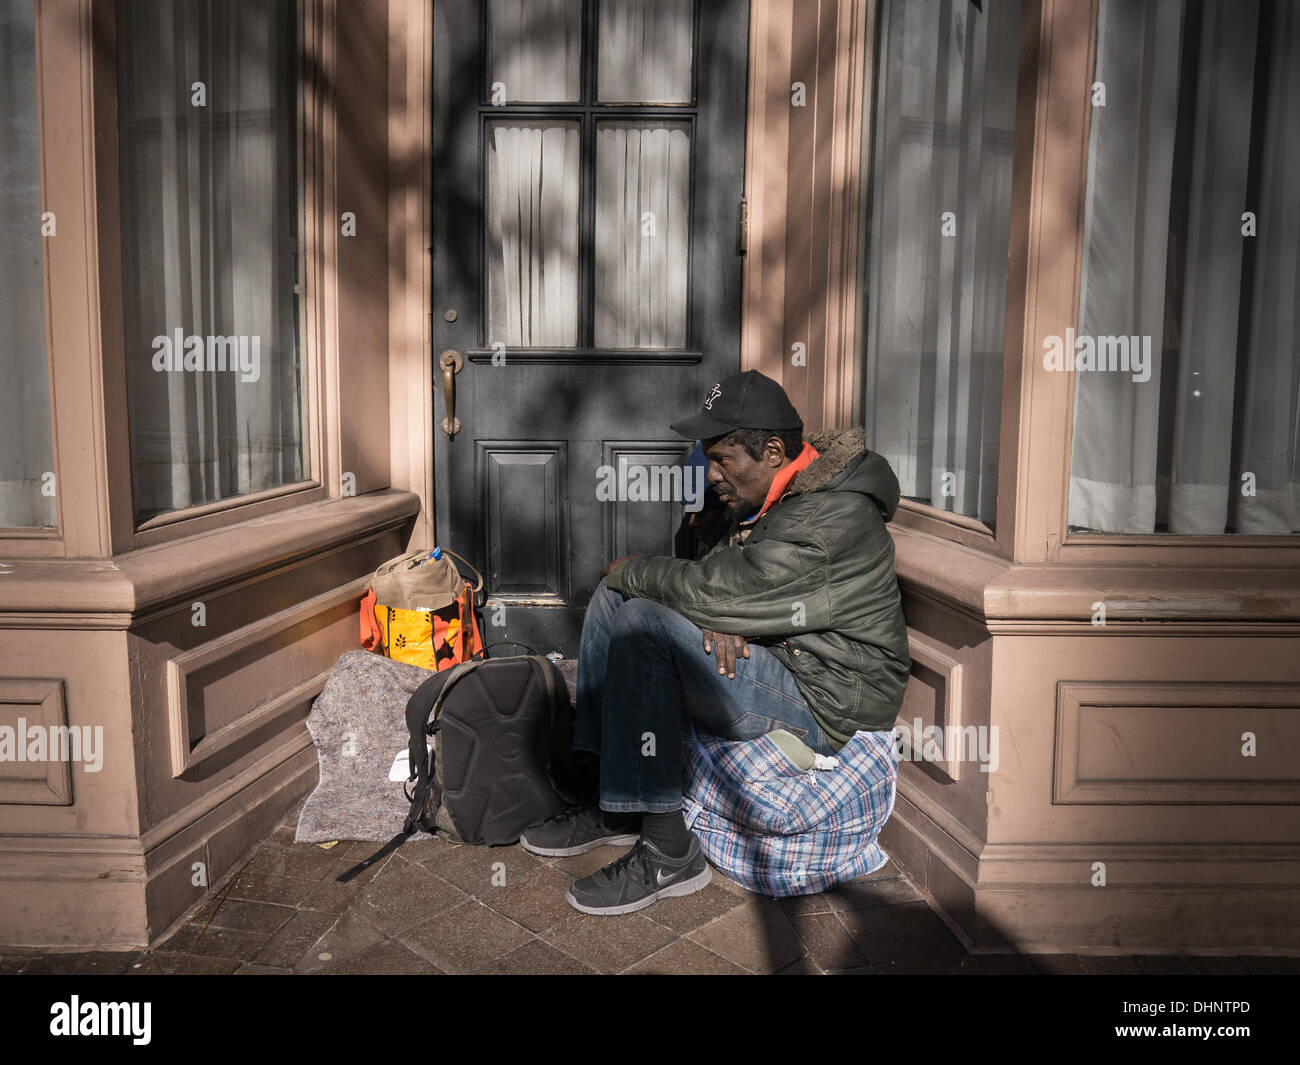 Washington DC, Stati Uniti d'America, 13 Nov, 2013: senzatetto cercare riparo dal freddo le temperature nel nord-est. Venti forti e temperature fredde in Washington, DC pongono nuove sfide per la street abitatori. Credito: Ann poco/Alamy Live News Foto Stock